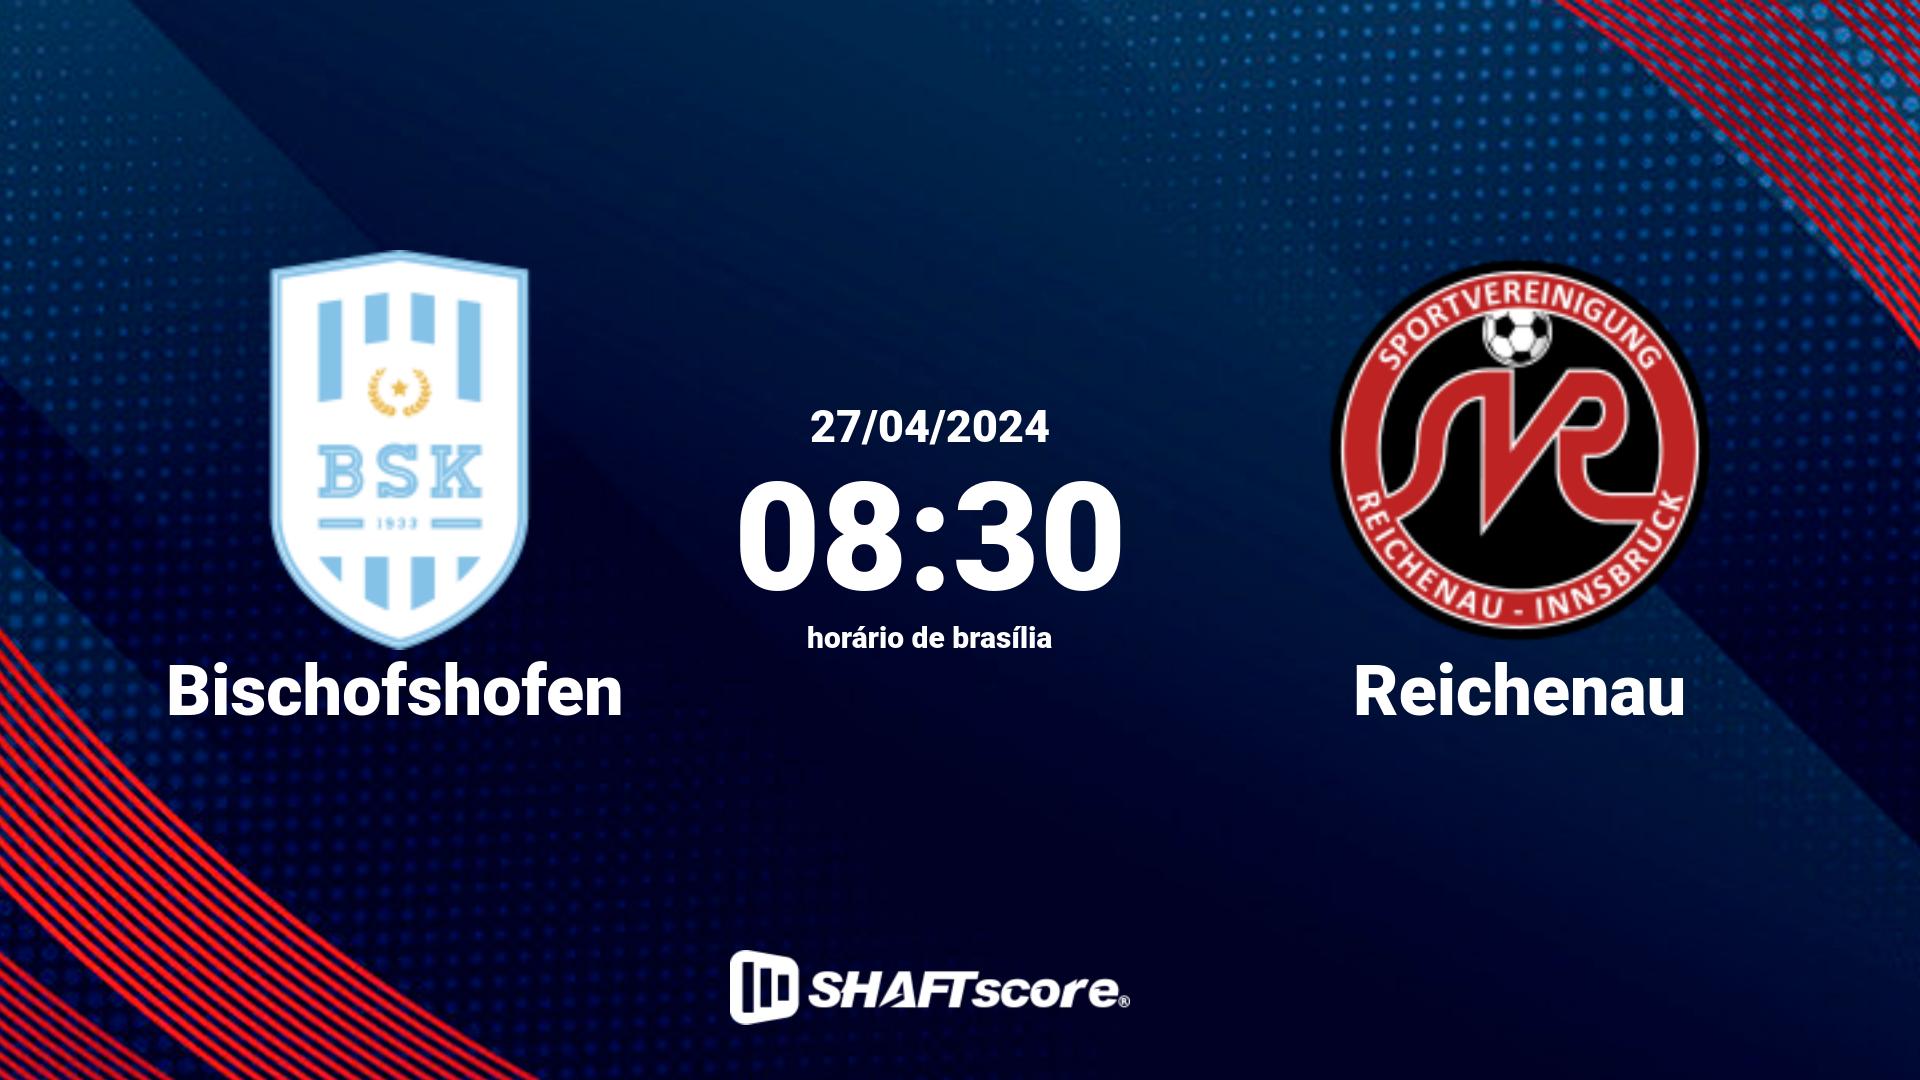 Estatísticas do jogo Bischofshofen vs Reichenau 27.04 08:30